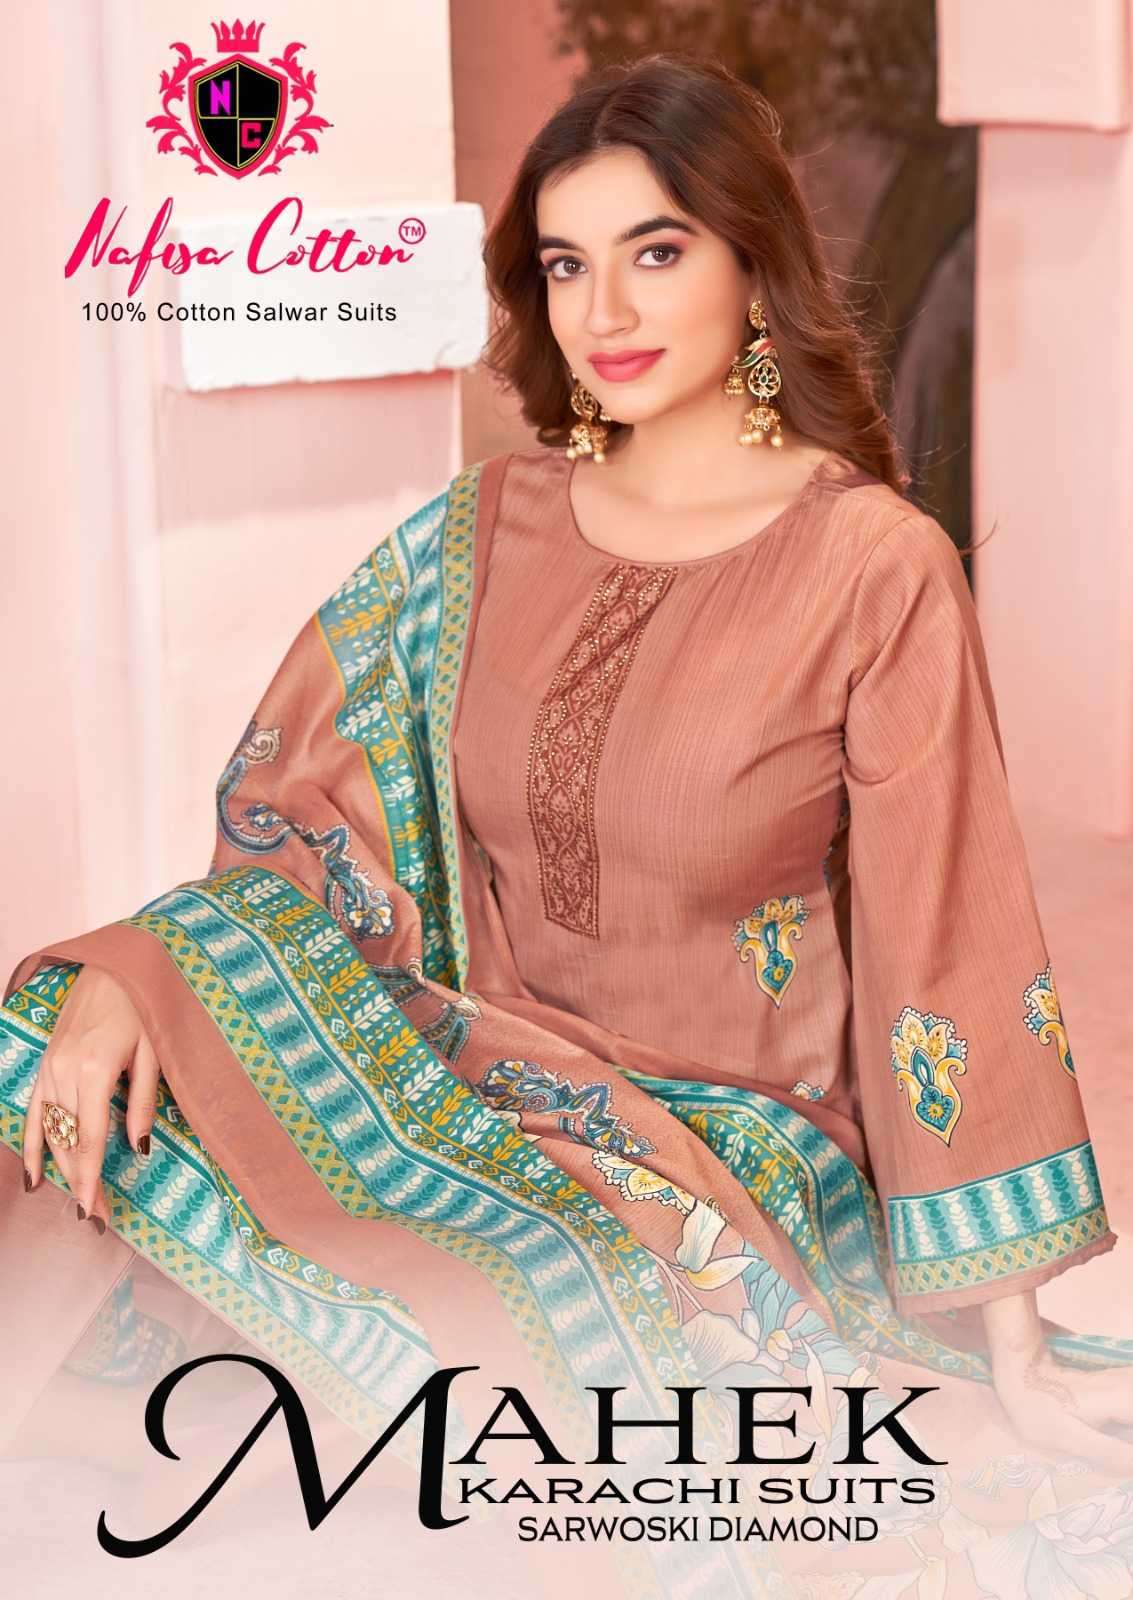 nafisa cotton mahek karachi suits series 1001-1010  print cotton suit